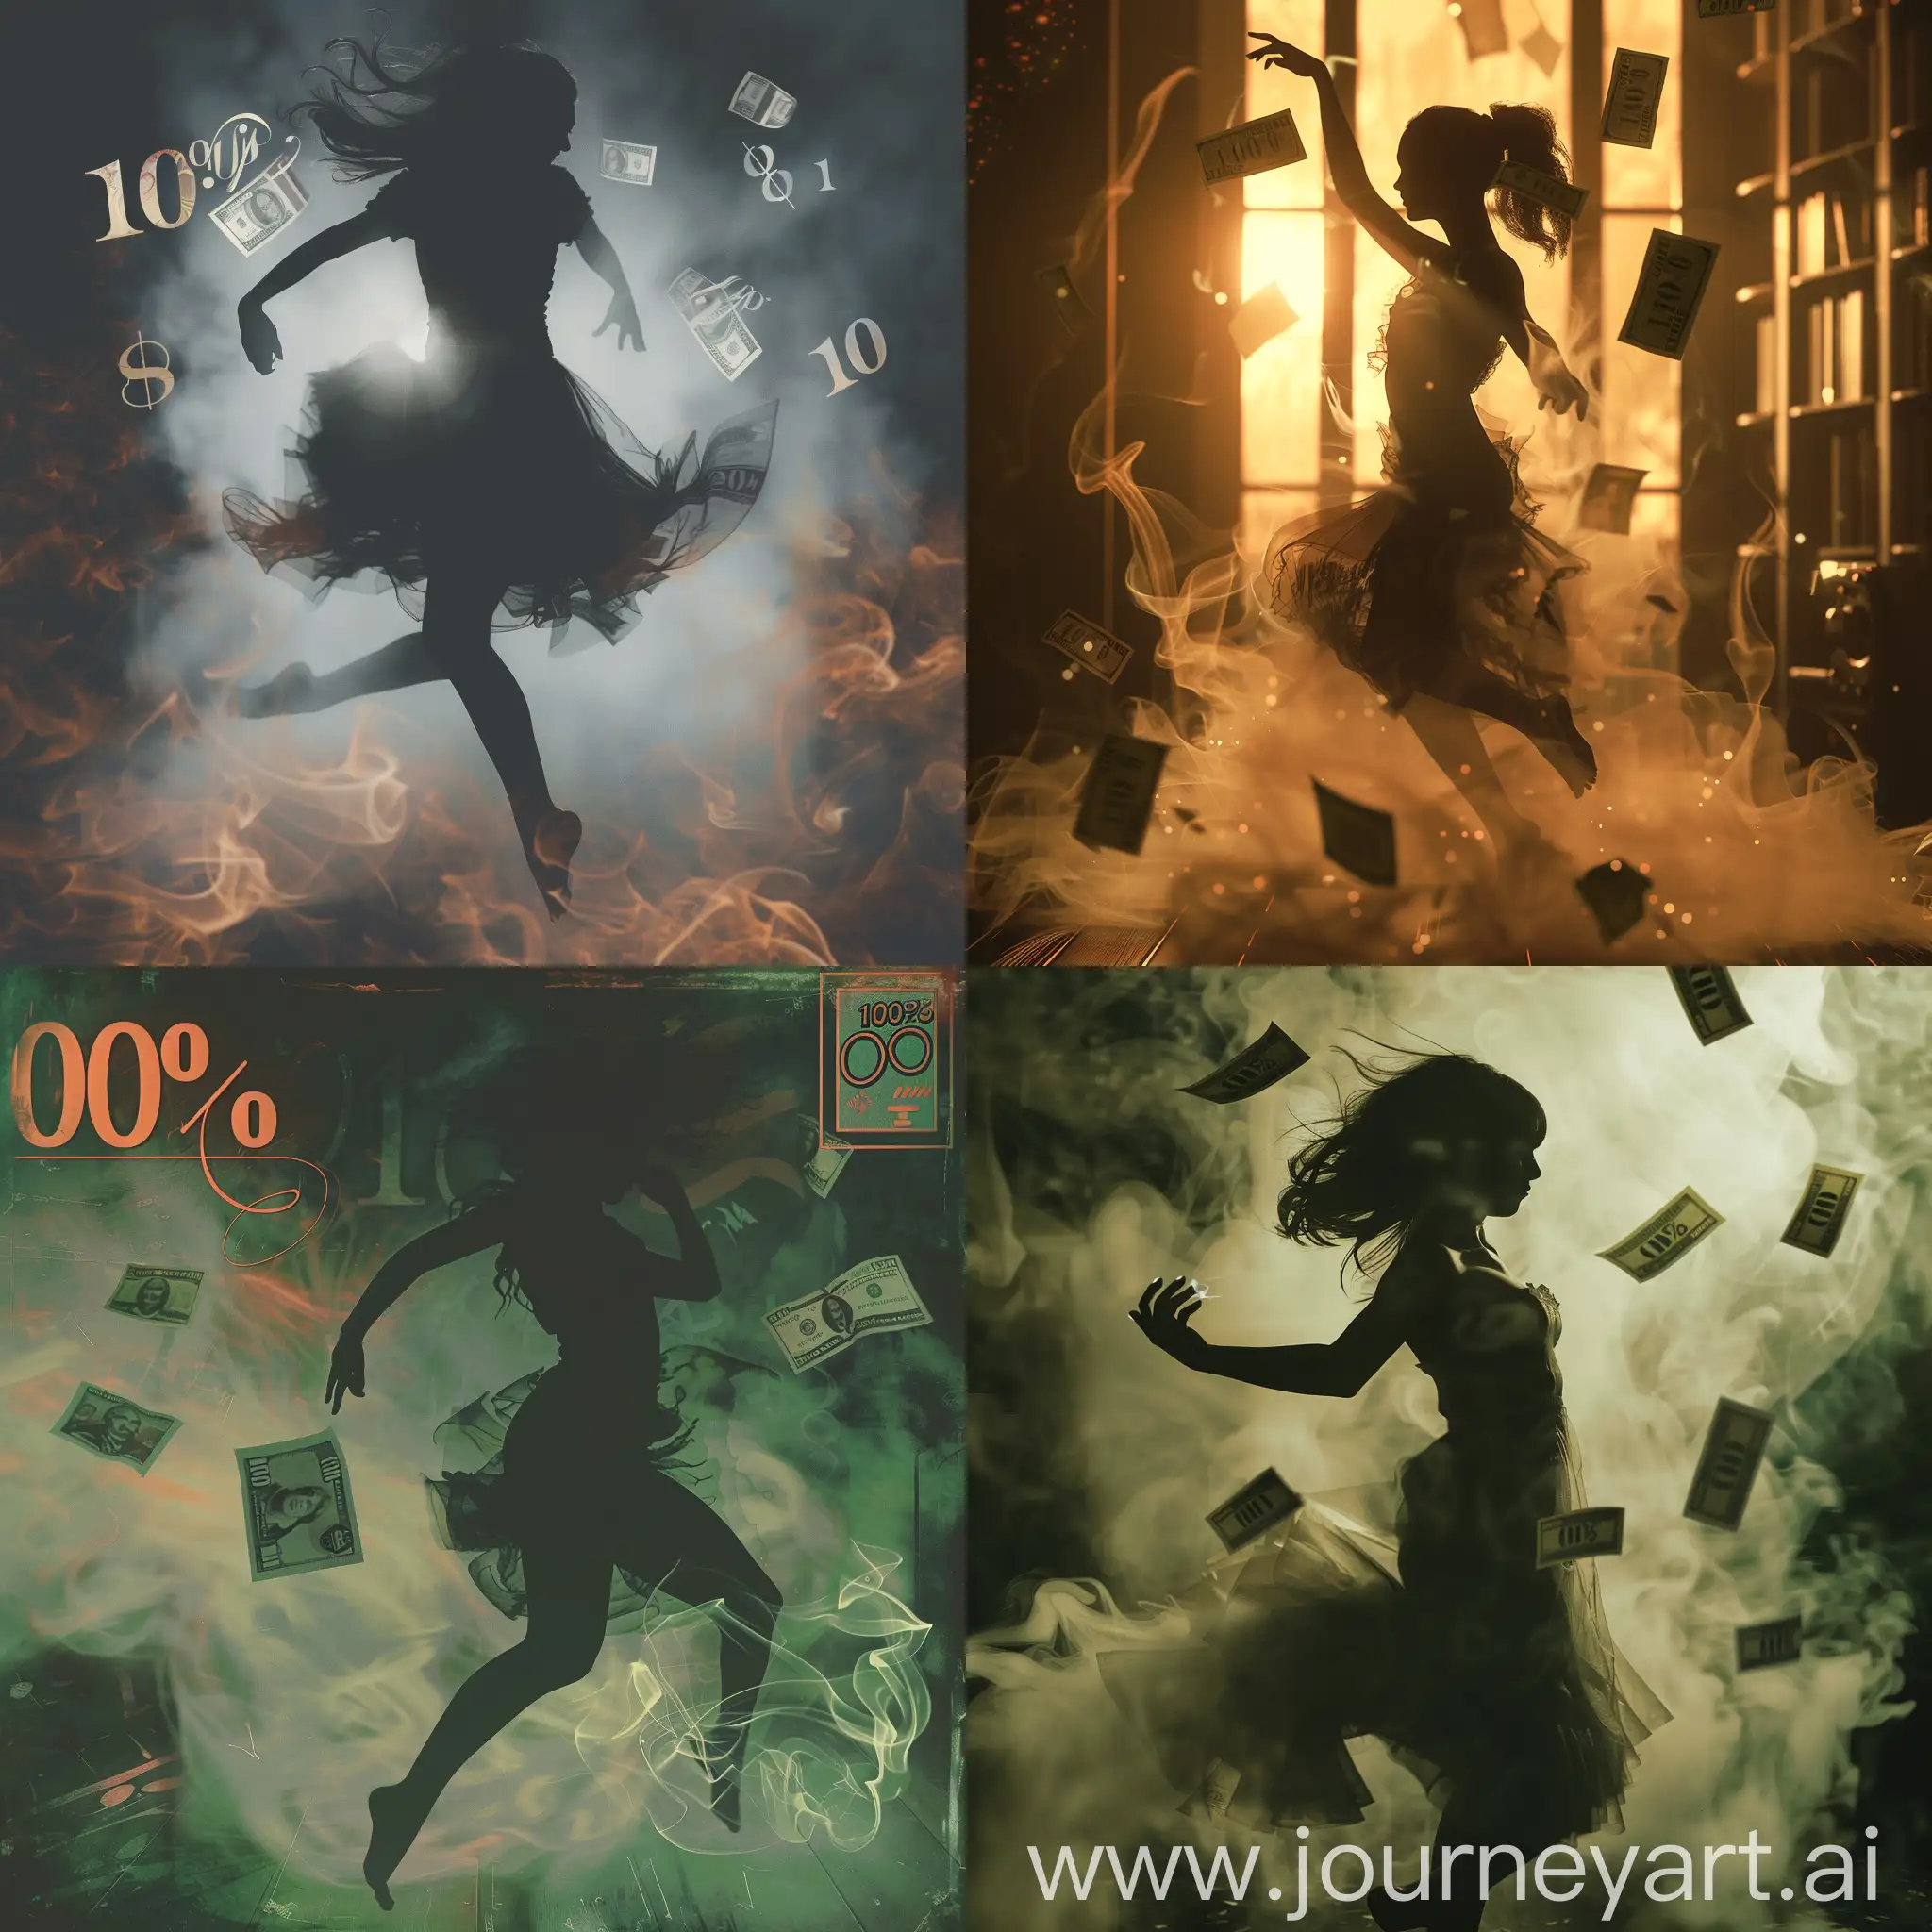 Обложка для трека, расслабляющая музыка, силуэт девушки которая танцует в дыму, вокруг также летят 100% купюры